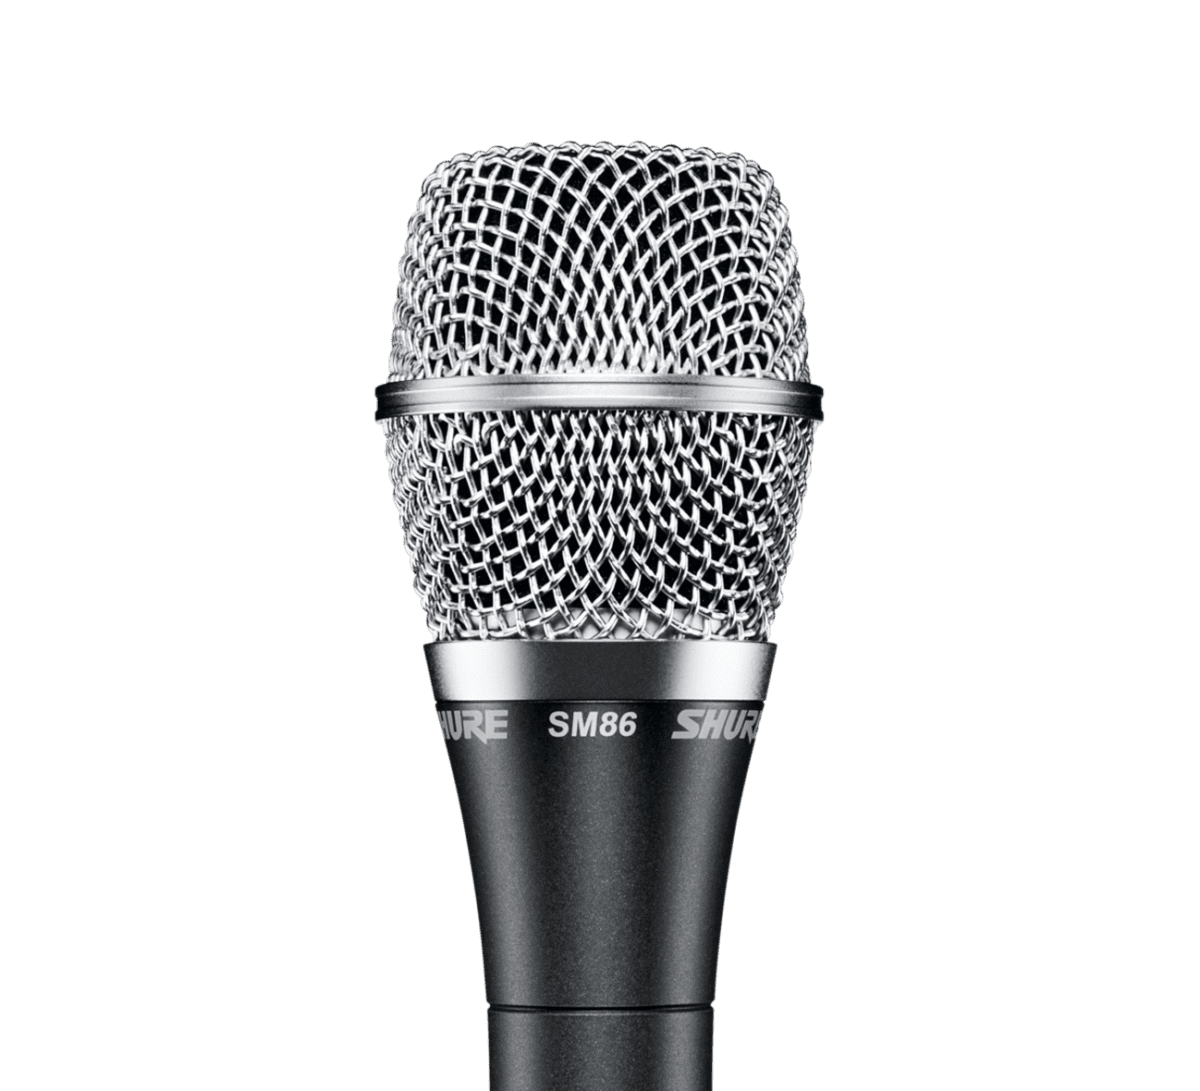 Shure SM86 Handheld Condenser Microphone